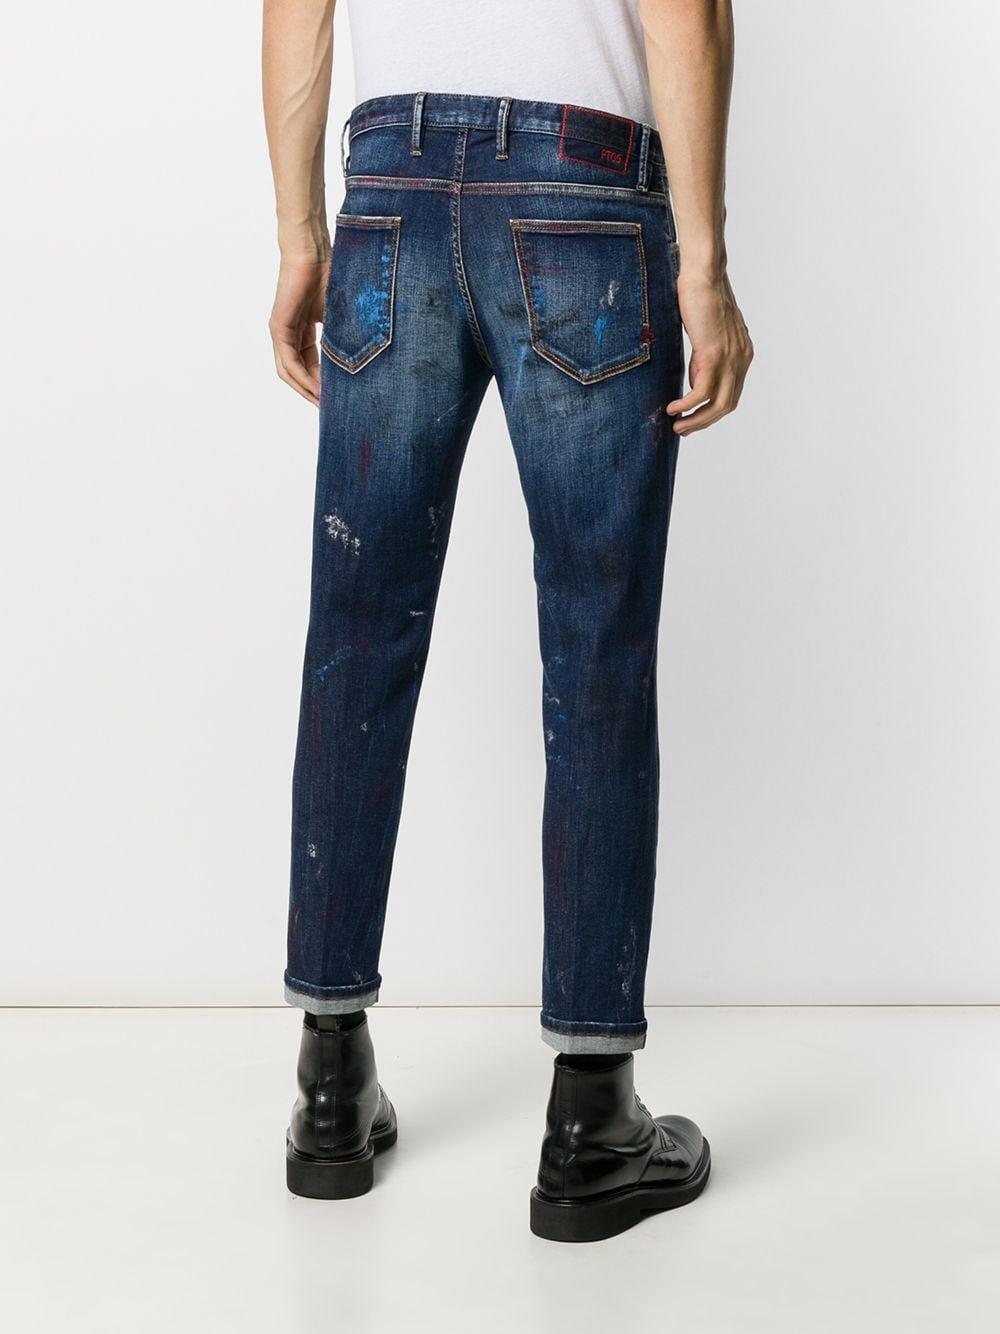 Pt05 Denim Paint Splatter Jeans in Blue for Men - Lyst